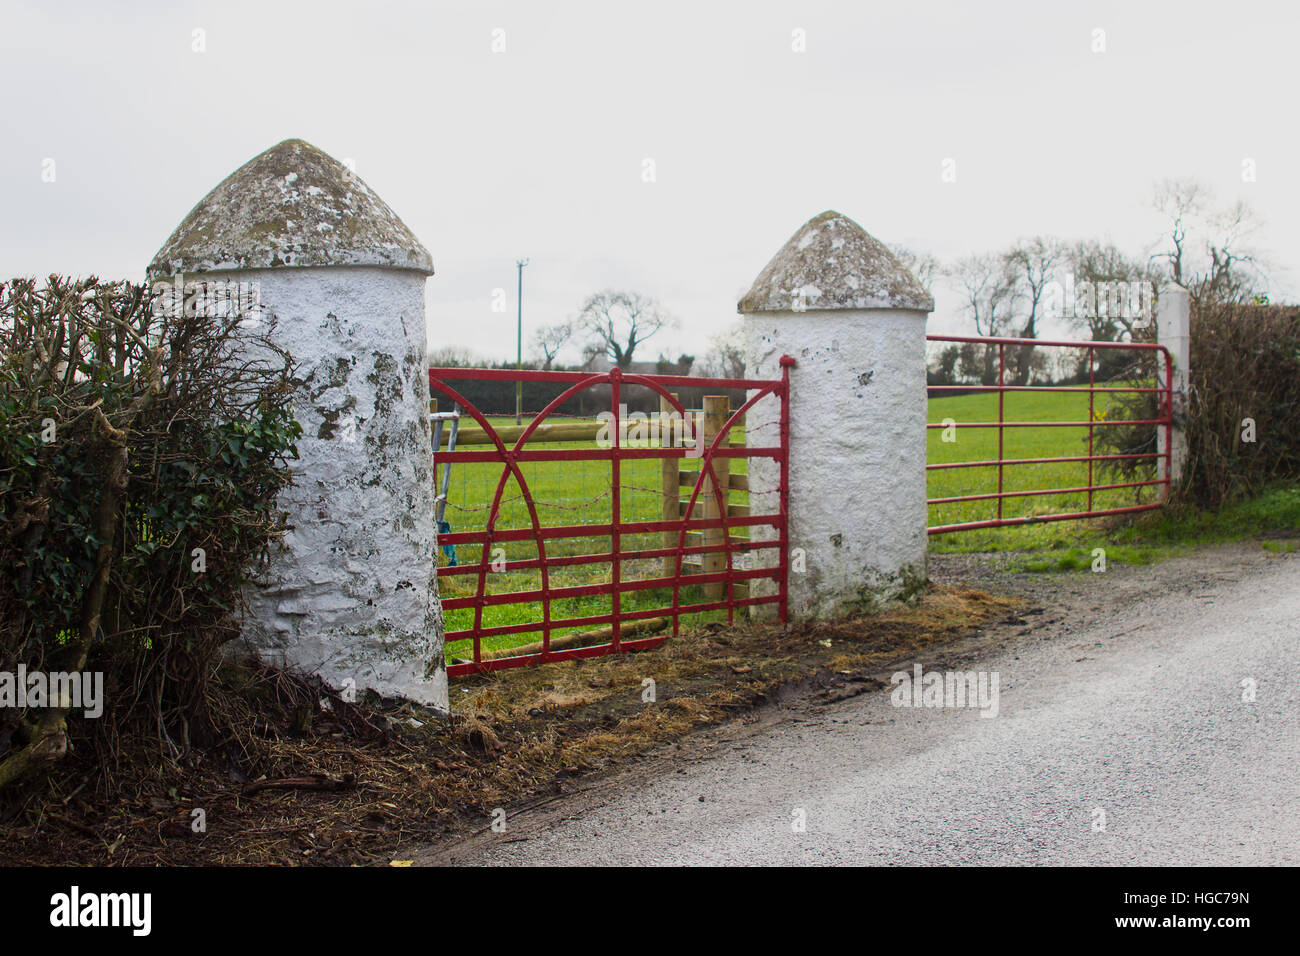 La tradición la puerta de piedra redonda pilares como se ve en la entrada de muchos campos agrícolas en Irlanda Foto de stock